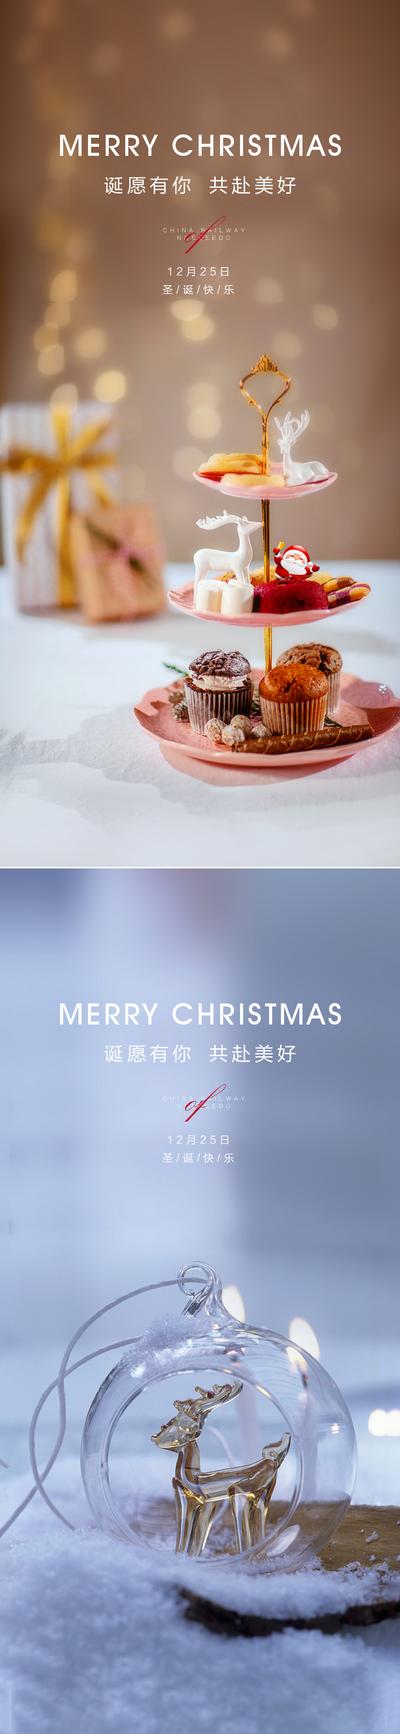 南门网 海报 房地产 公历节日 圣诞节 蛋糕